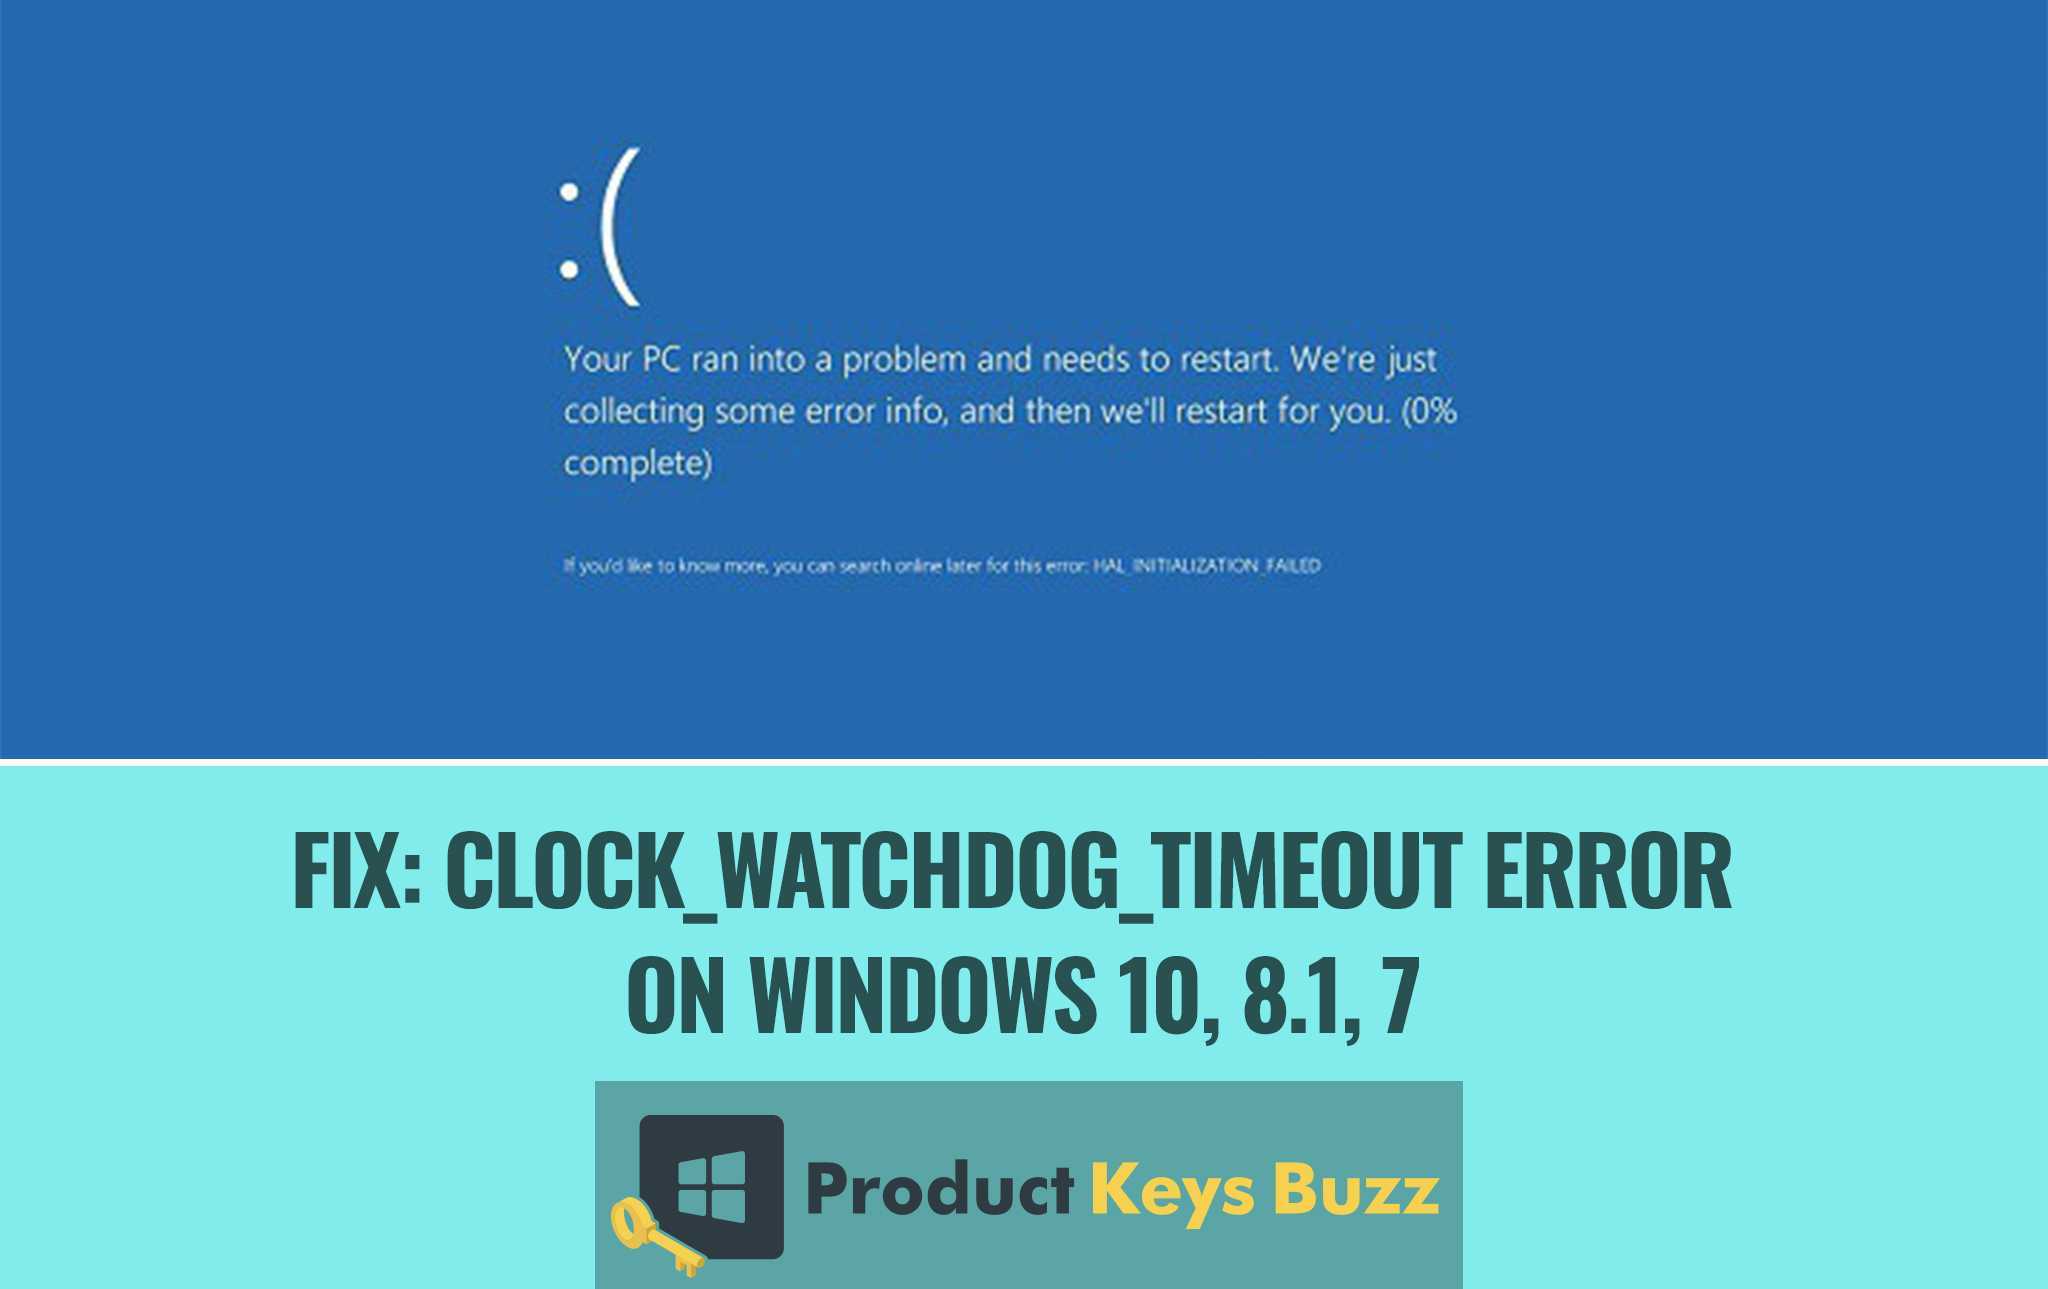 Clock_watchdog_timeout в windows 10: как исправить ошибку?